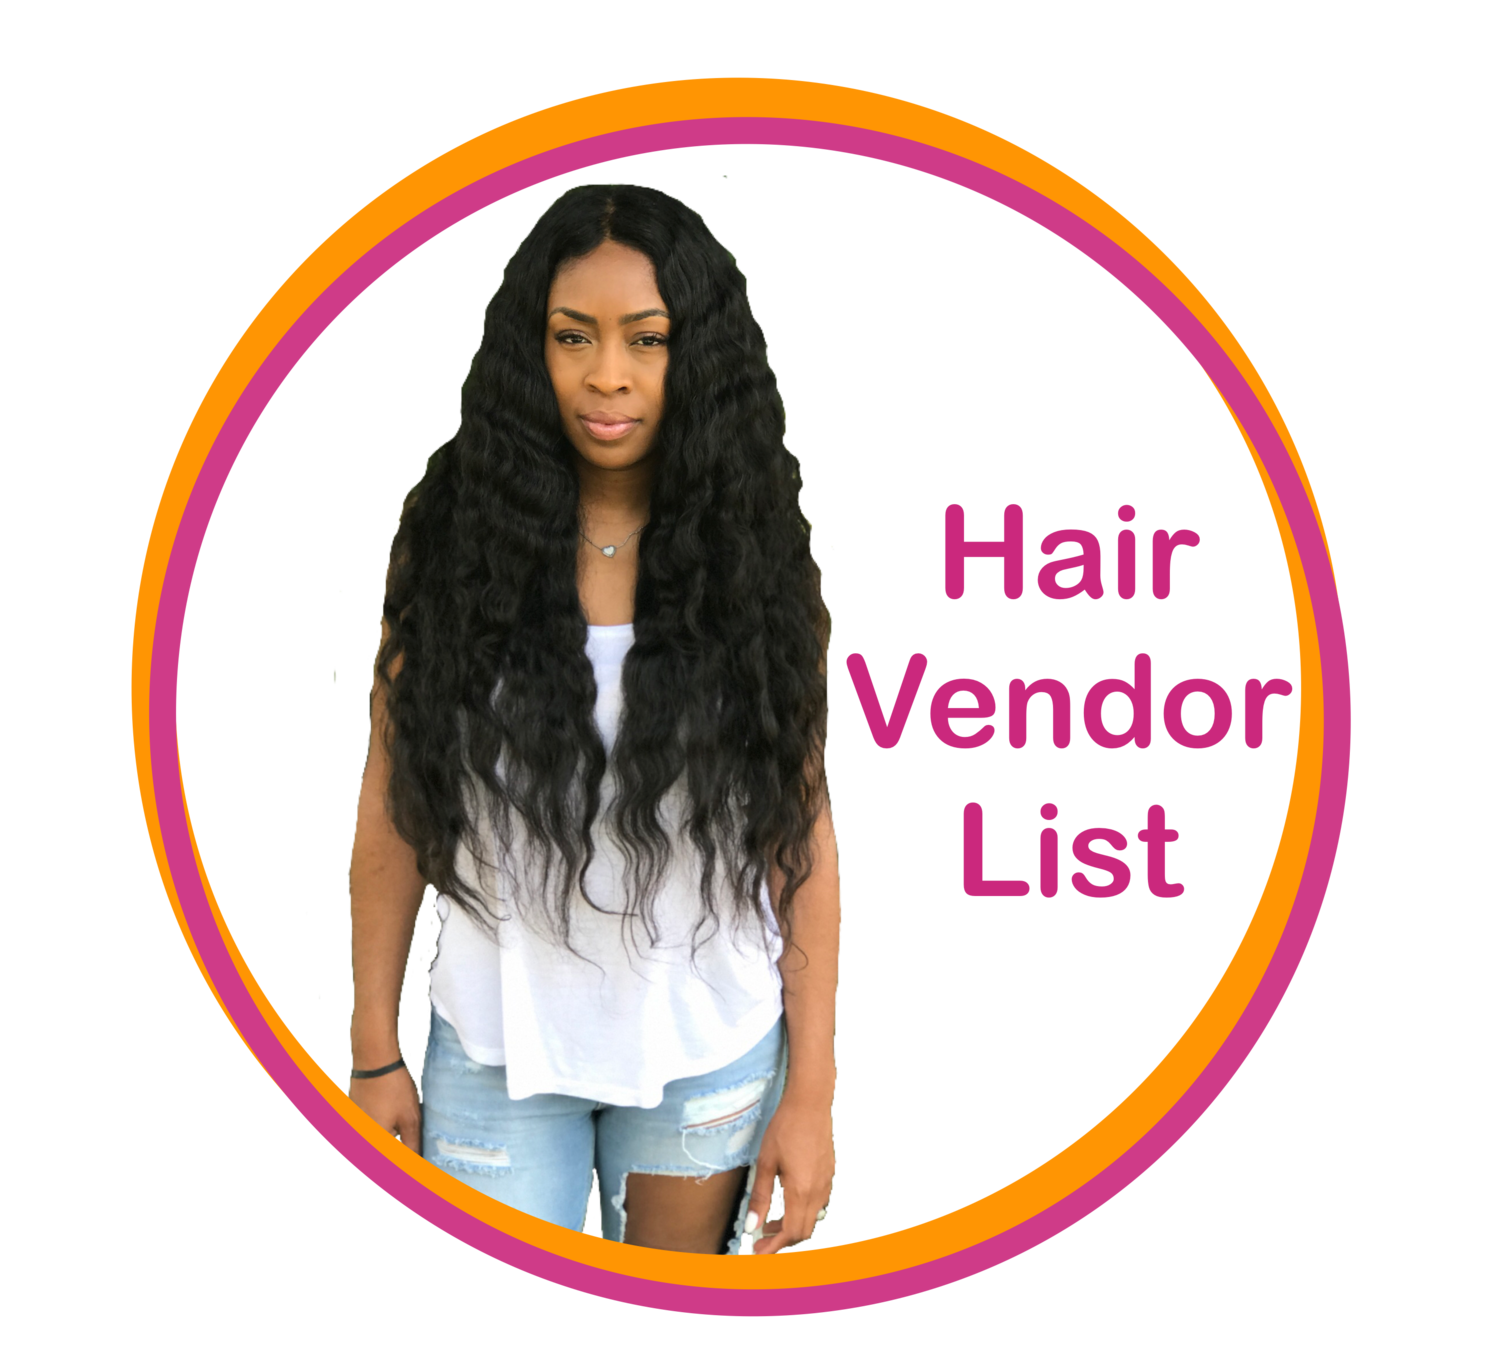 Ashley's Hair Vendor List